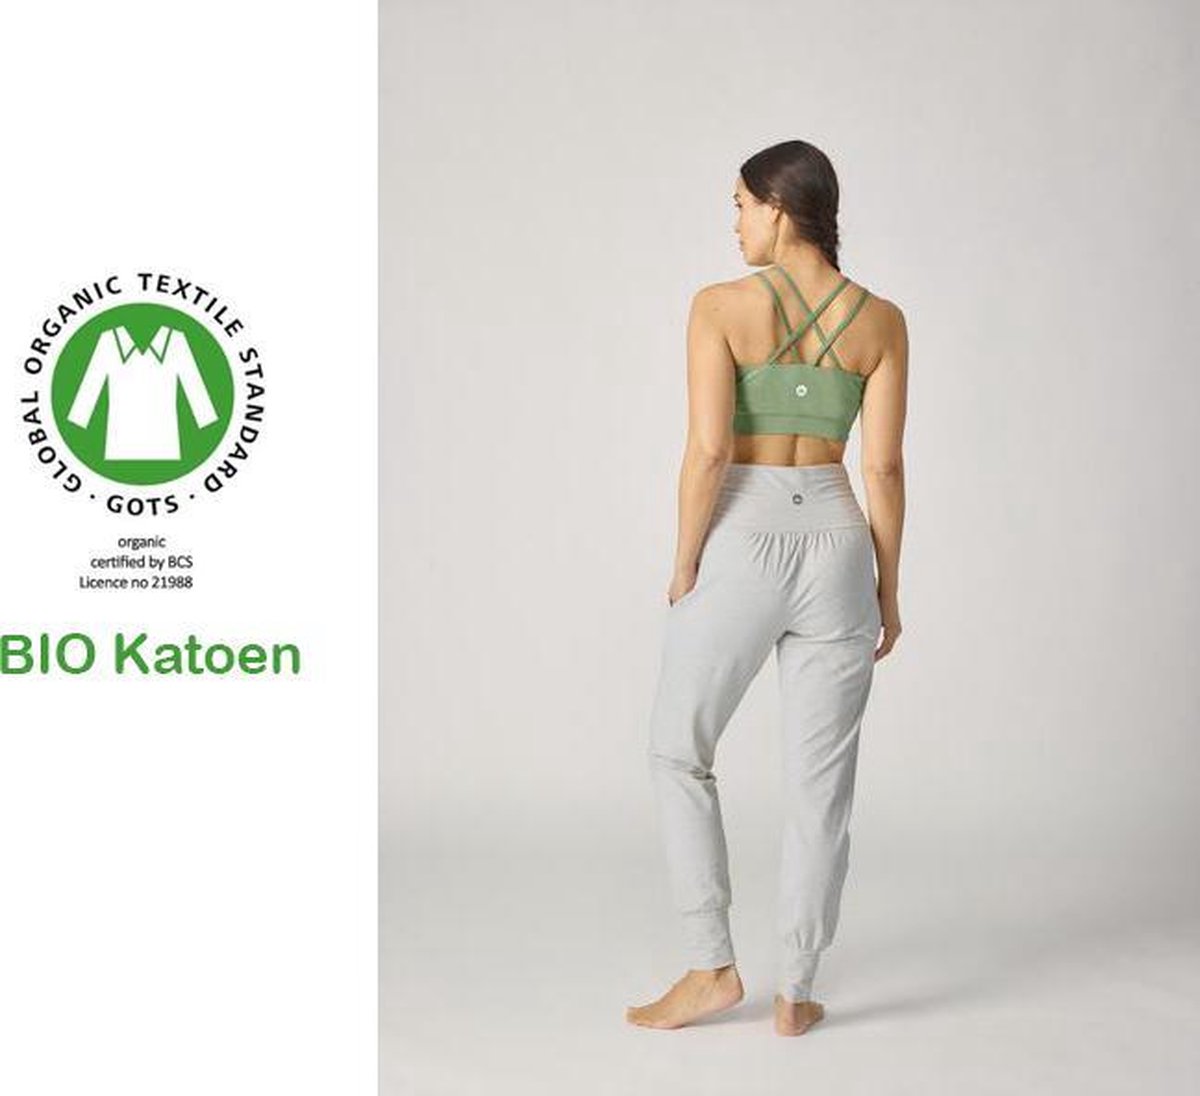 Yoga broek in BIO katoen maat S grijs - GOTS certificaat - zacht - duurzaam - biologisch katoen - yoga broek dames - yoga broek - bio cotton - yoga pants - yoga broek katoen